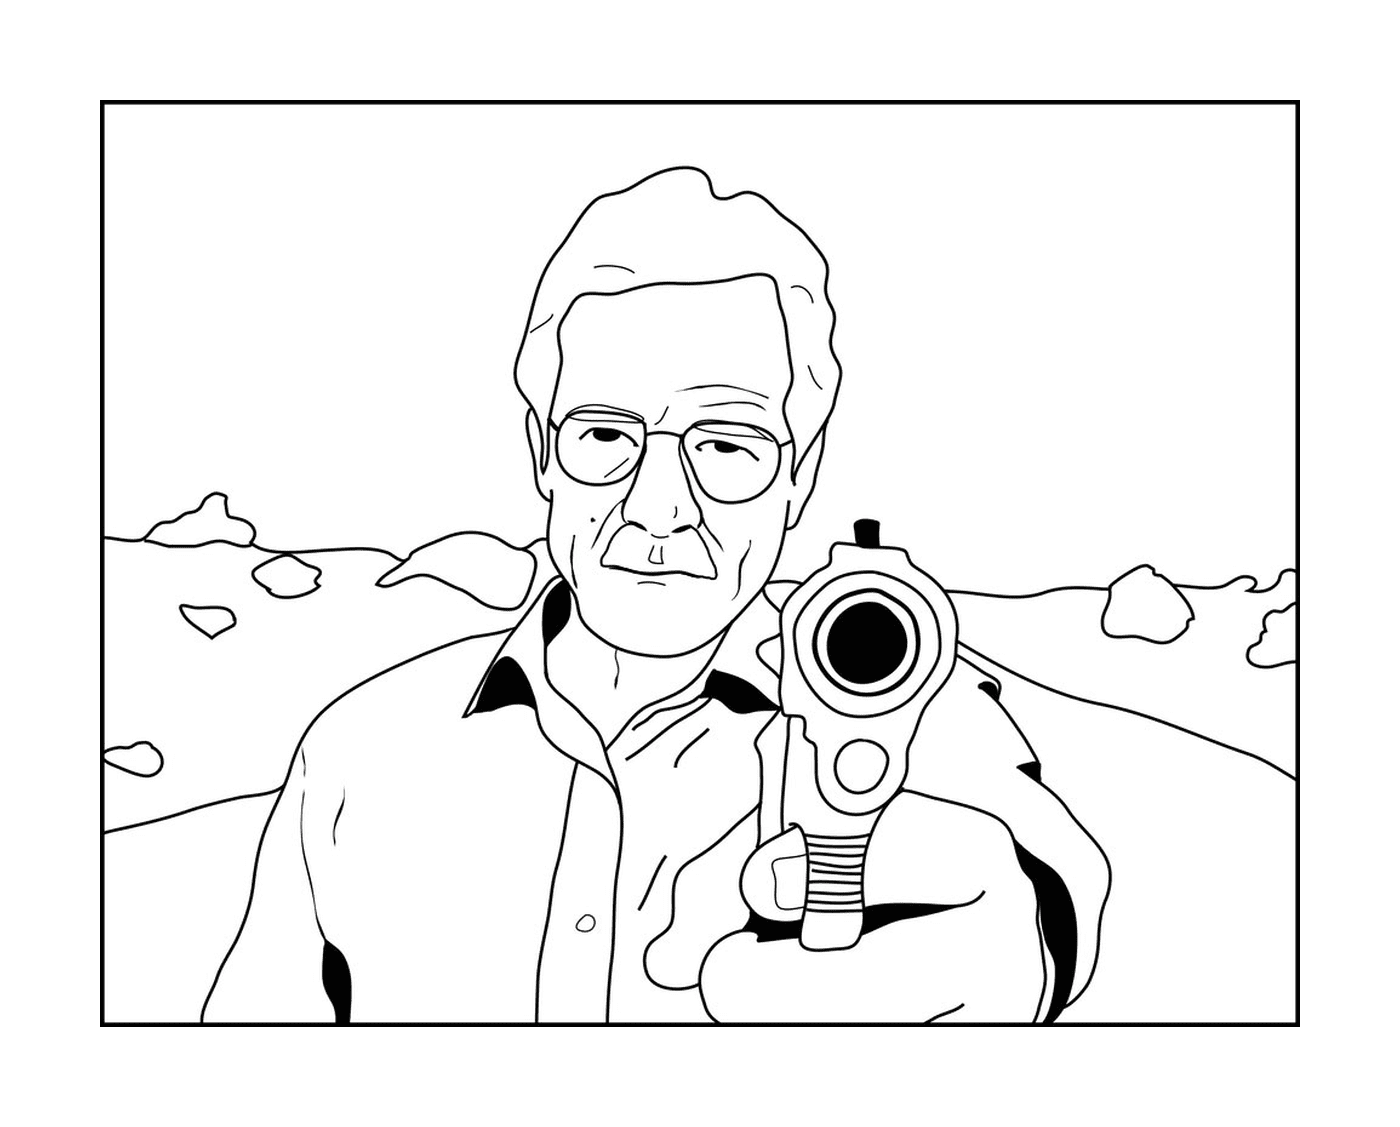  Un uomo anziano con una pistola in mano 